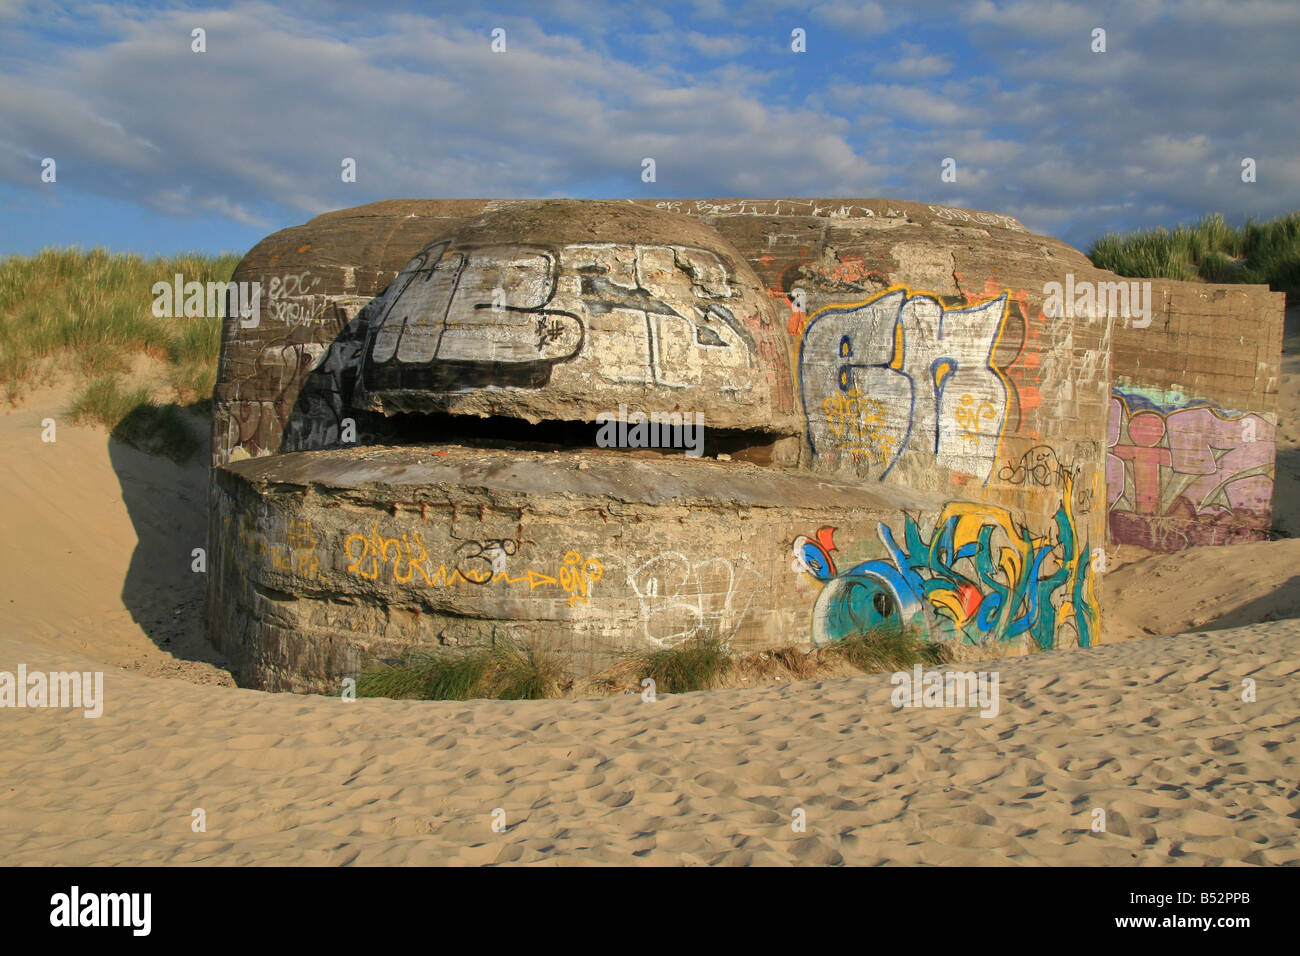 Un bunker en béton allemand, une partie de mur de l'Atlantique, Hitler à Dunkerque (Dunkerque), le nord de la France. Banque D'Images